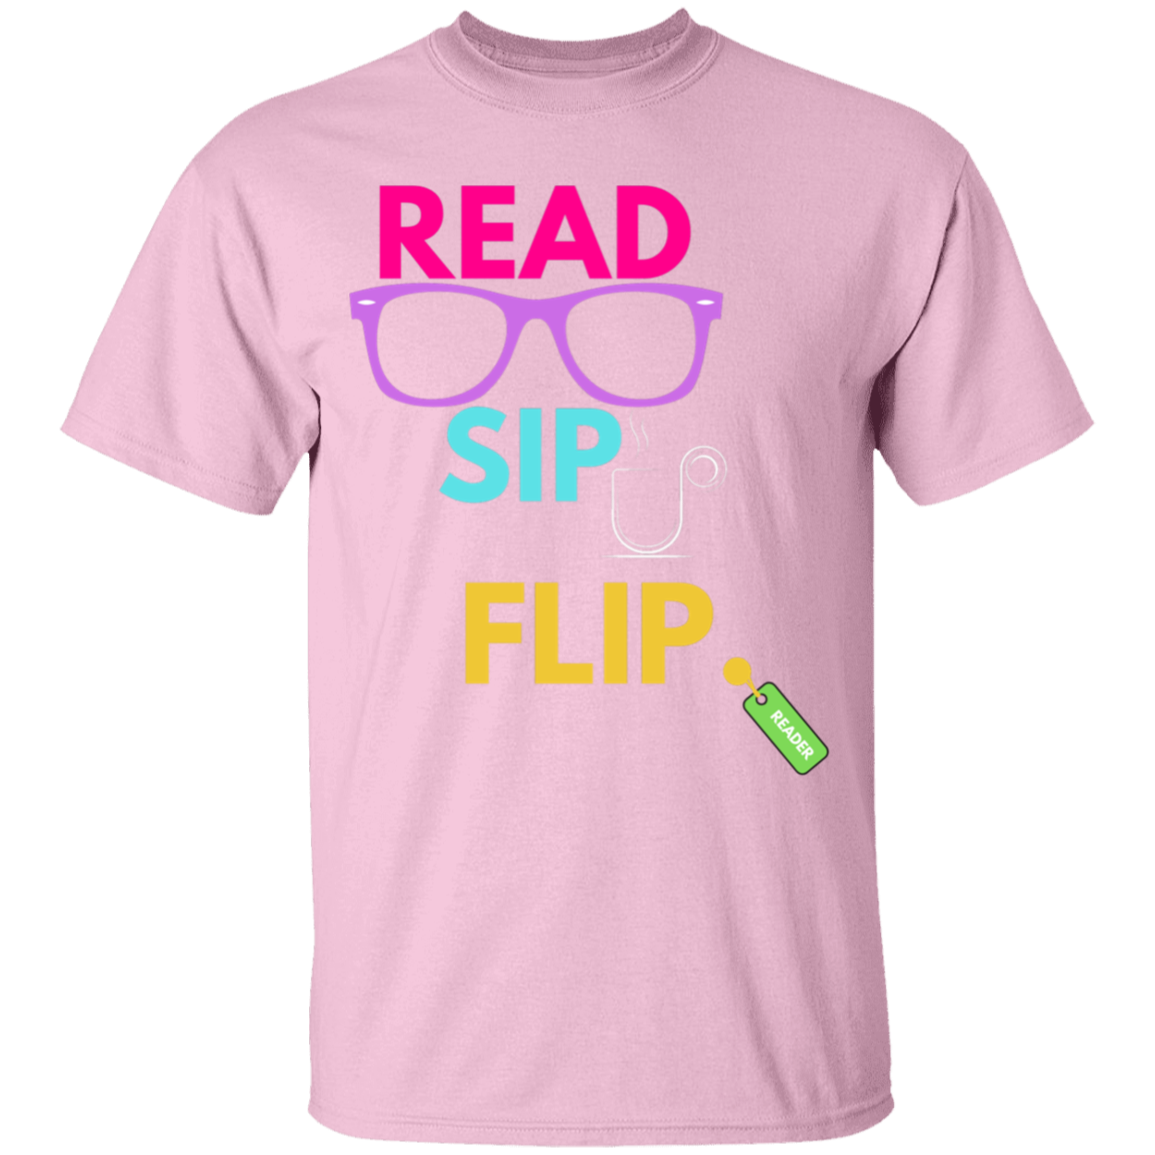 Read, Sip, Flip T-shirt